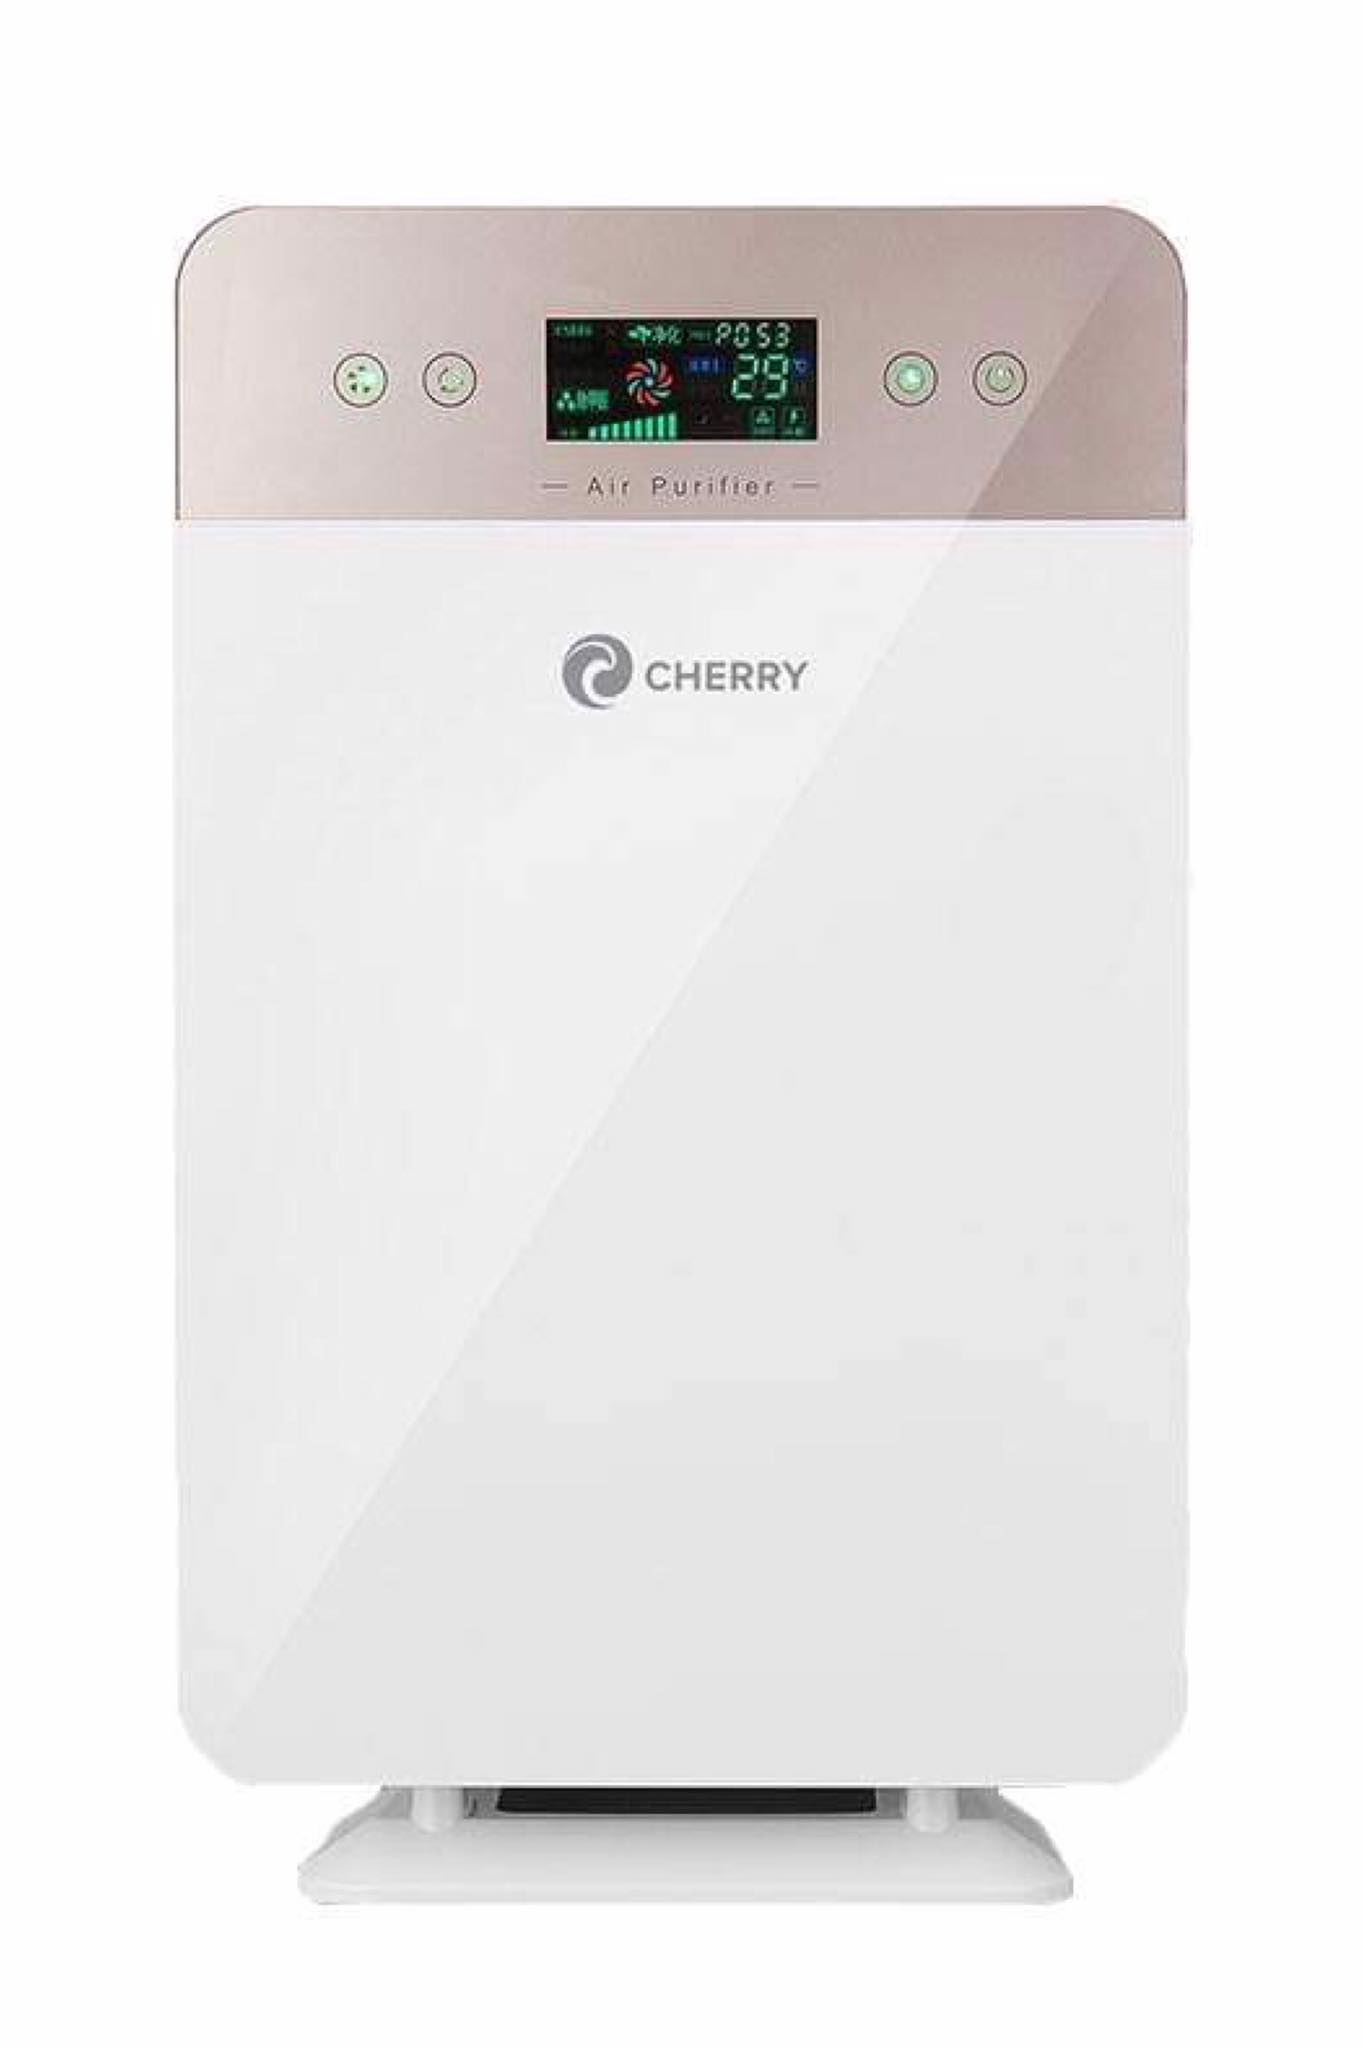 Cherry Home Air Purifier AP-01